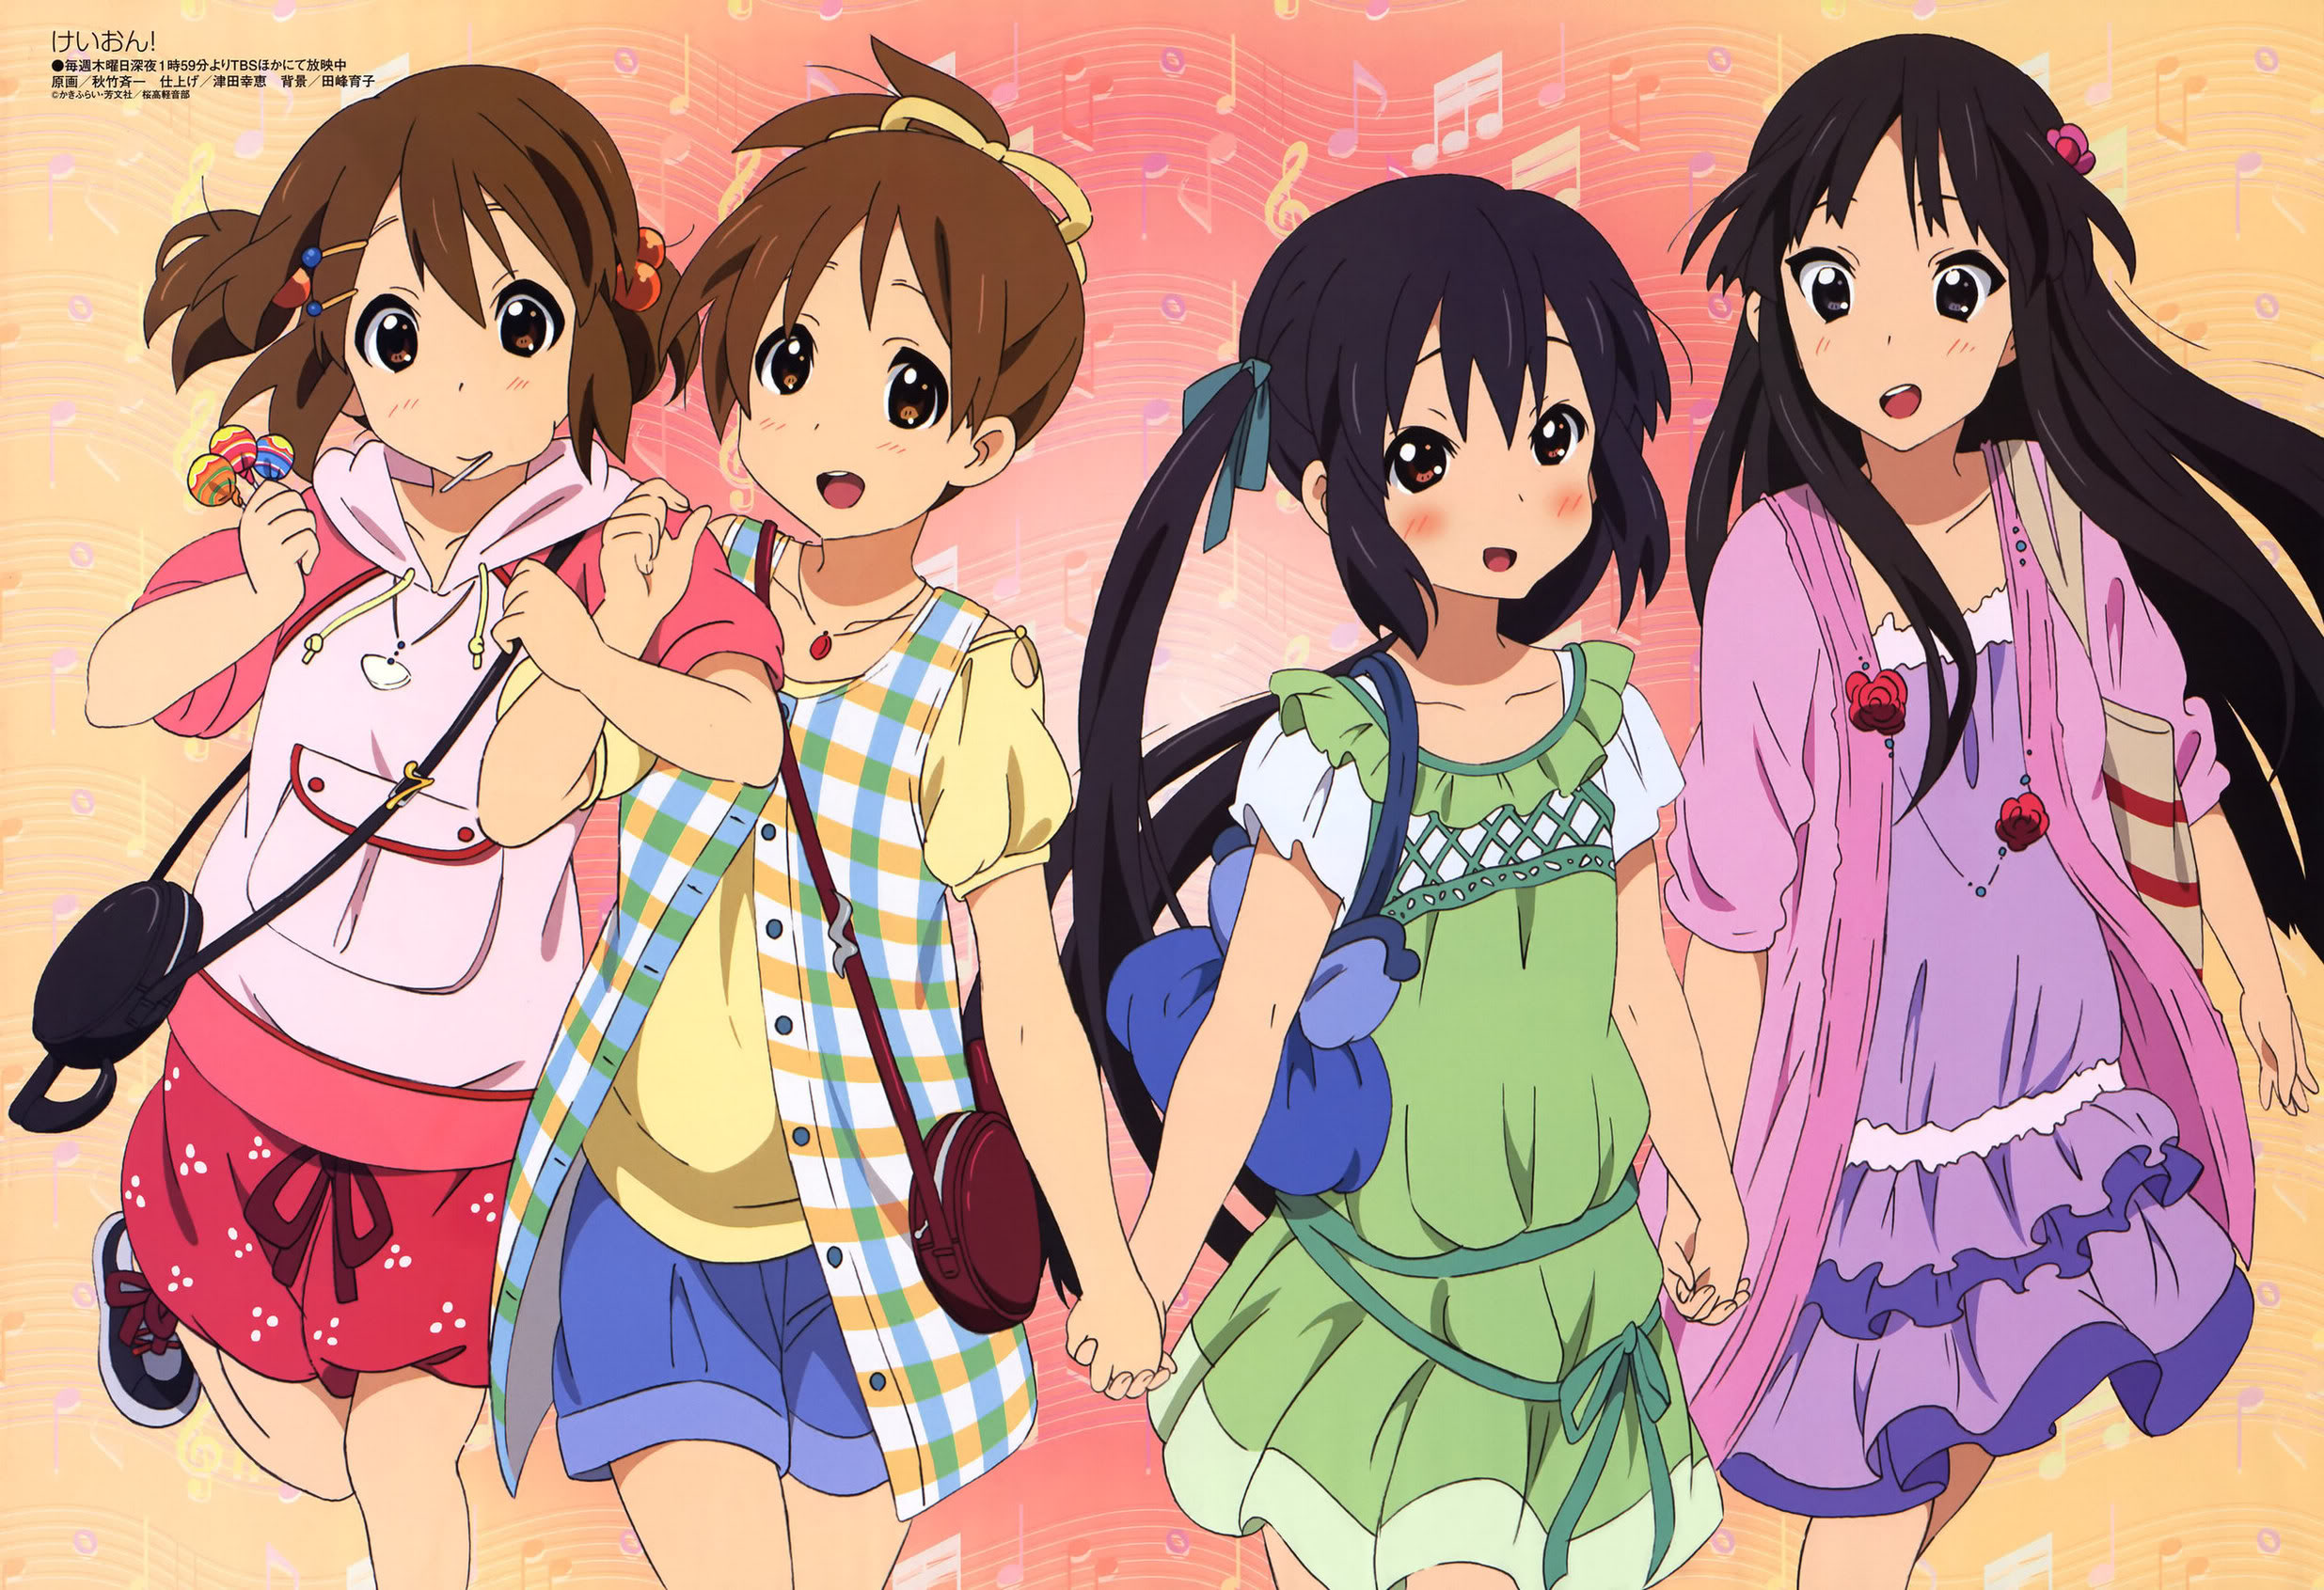 K-ON!, Hirasawa Yui, Akiyama Mio, Nakano Azusa, anime, Hirasawa Ui - desktop wallpaper